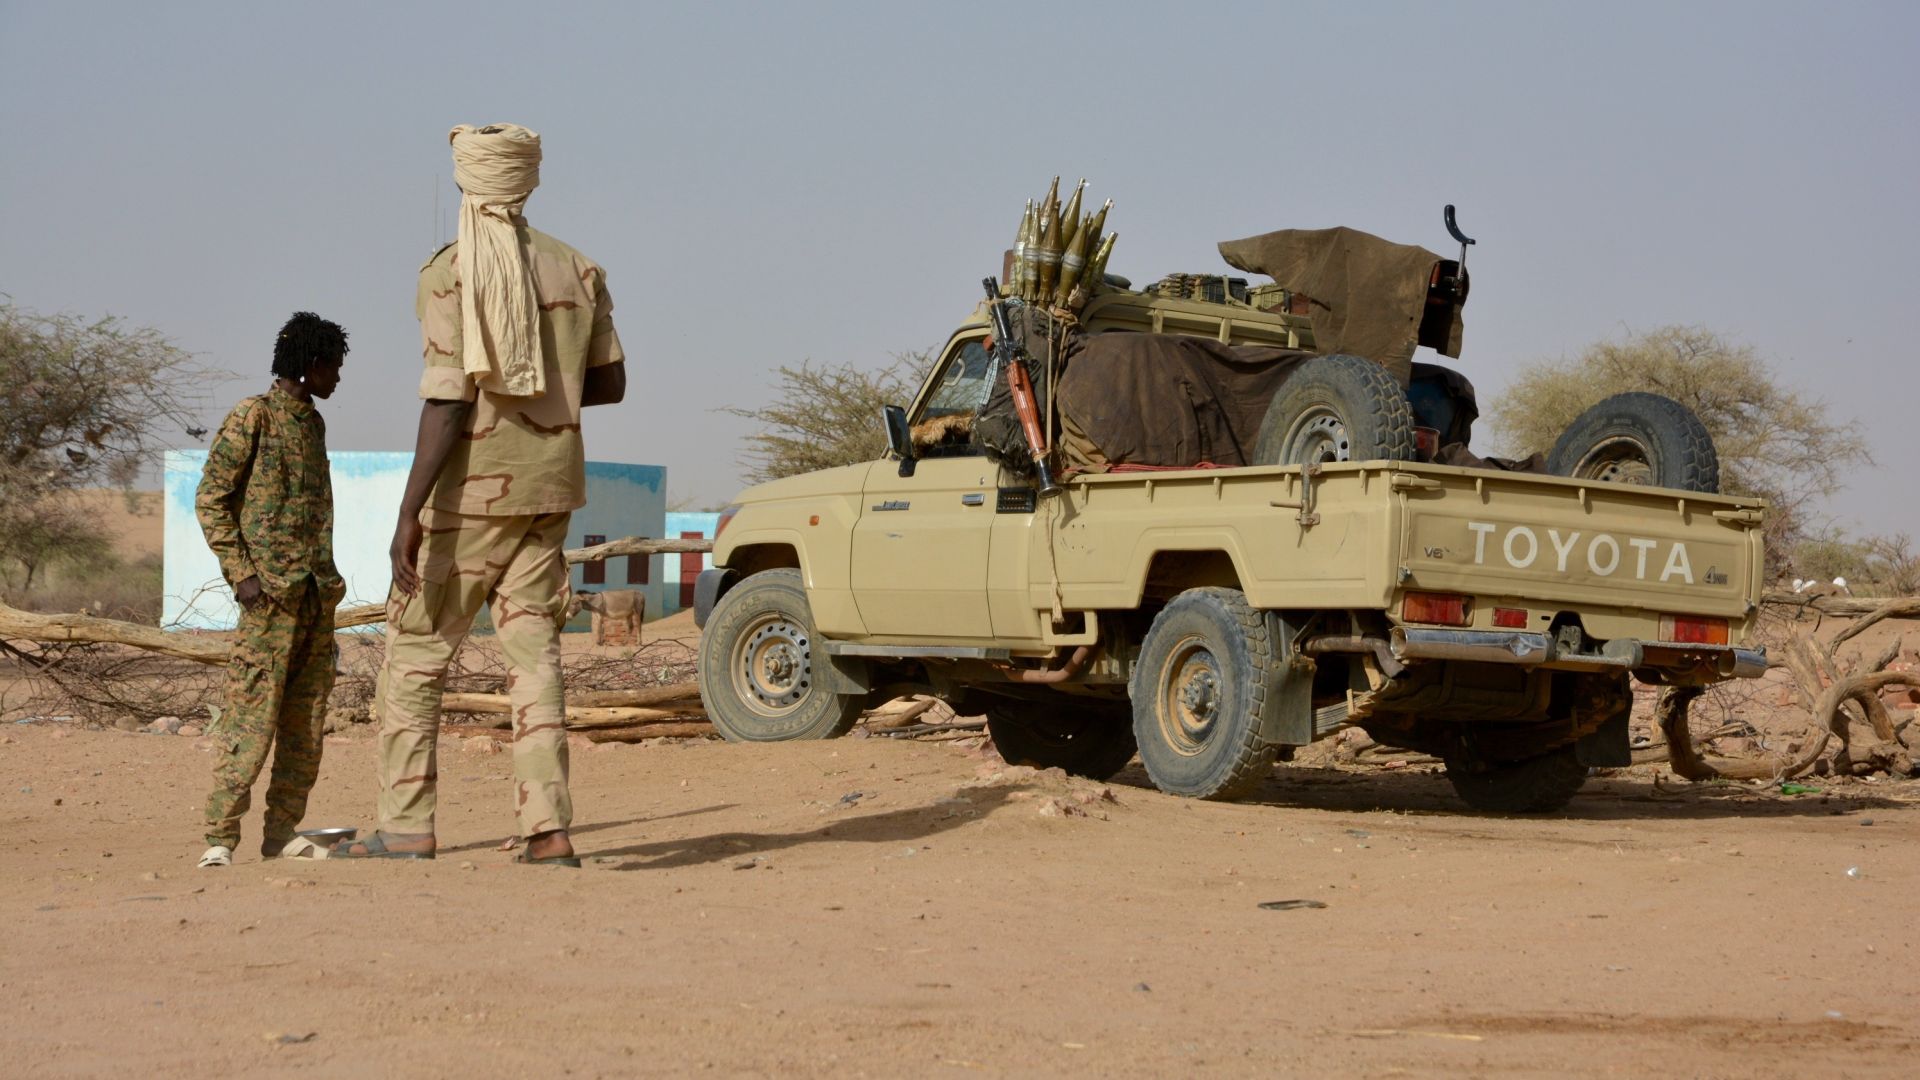 Rebel soldiers, Abu Gamra, Sudan